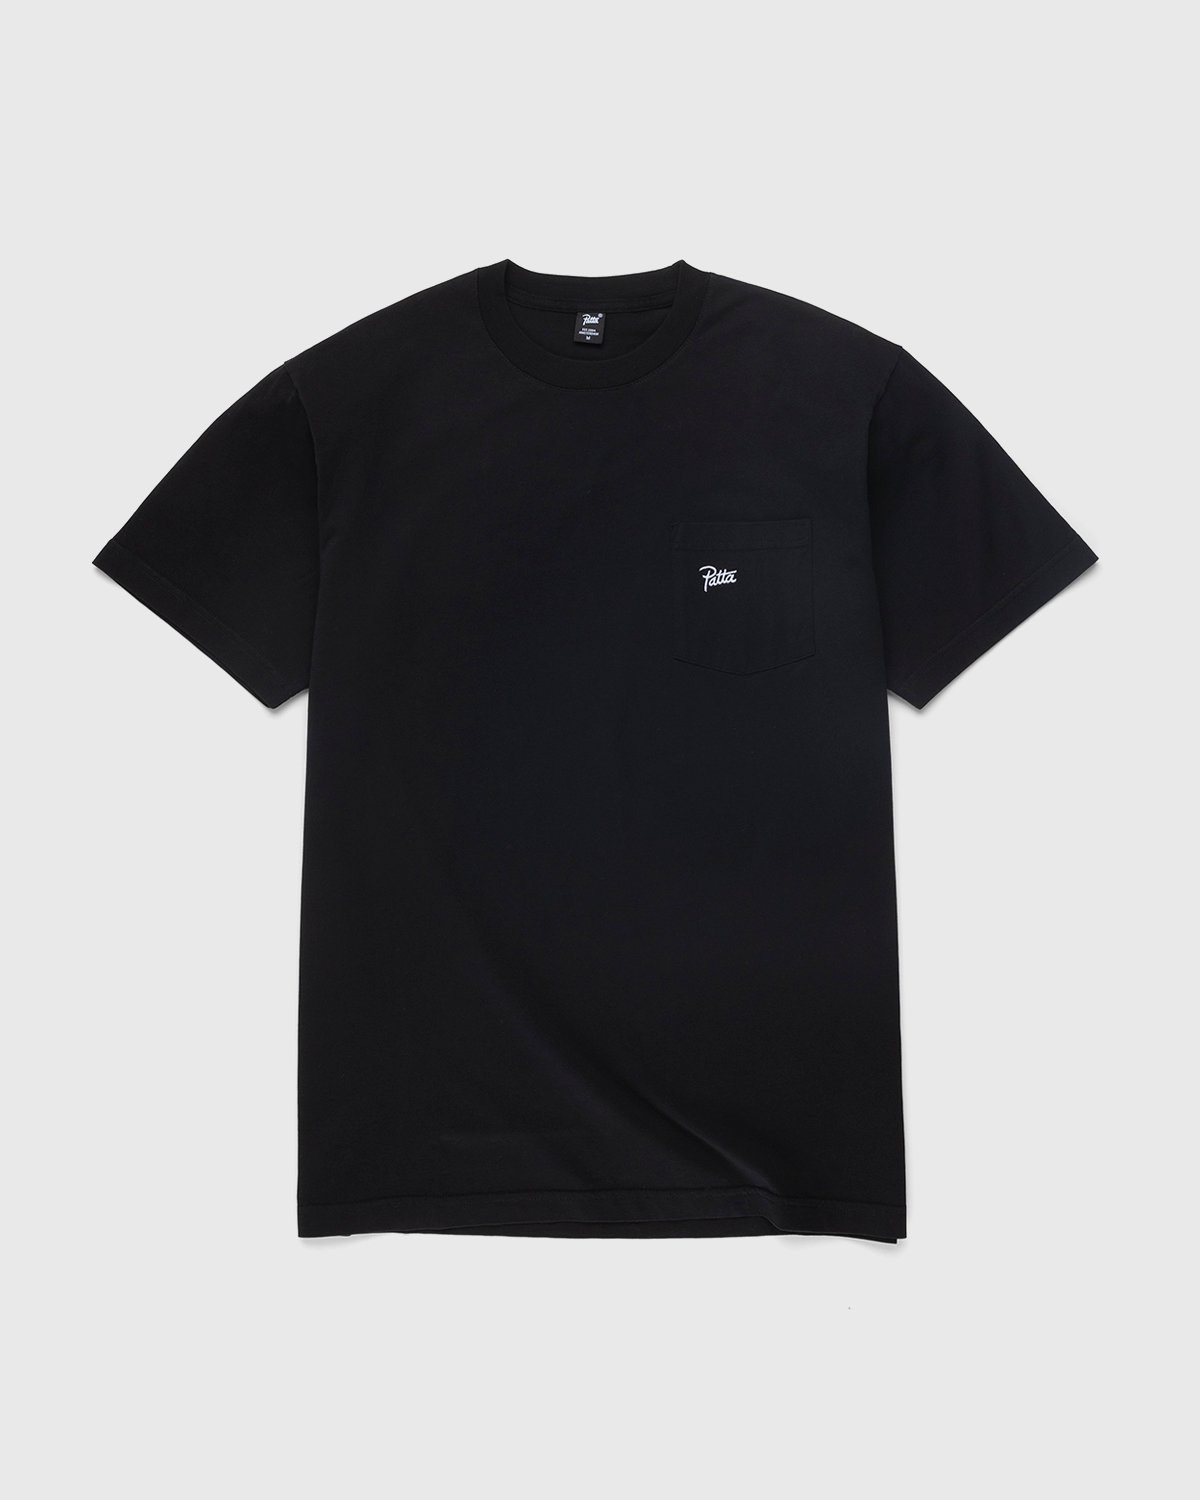 Patta - Basic Washed Pocket T-Shirt Black - Clothing - Black - Image 1